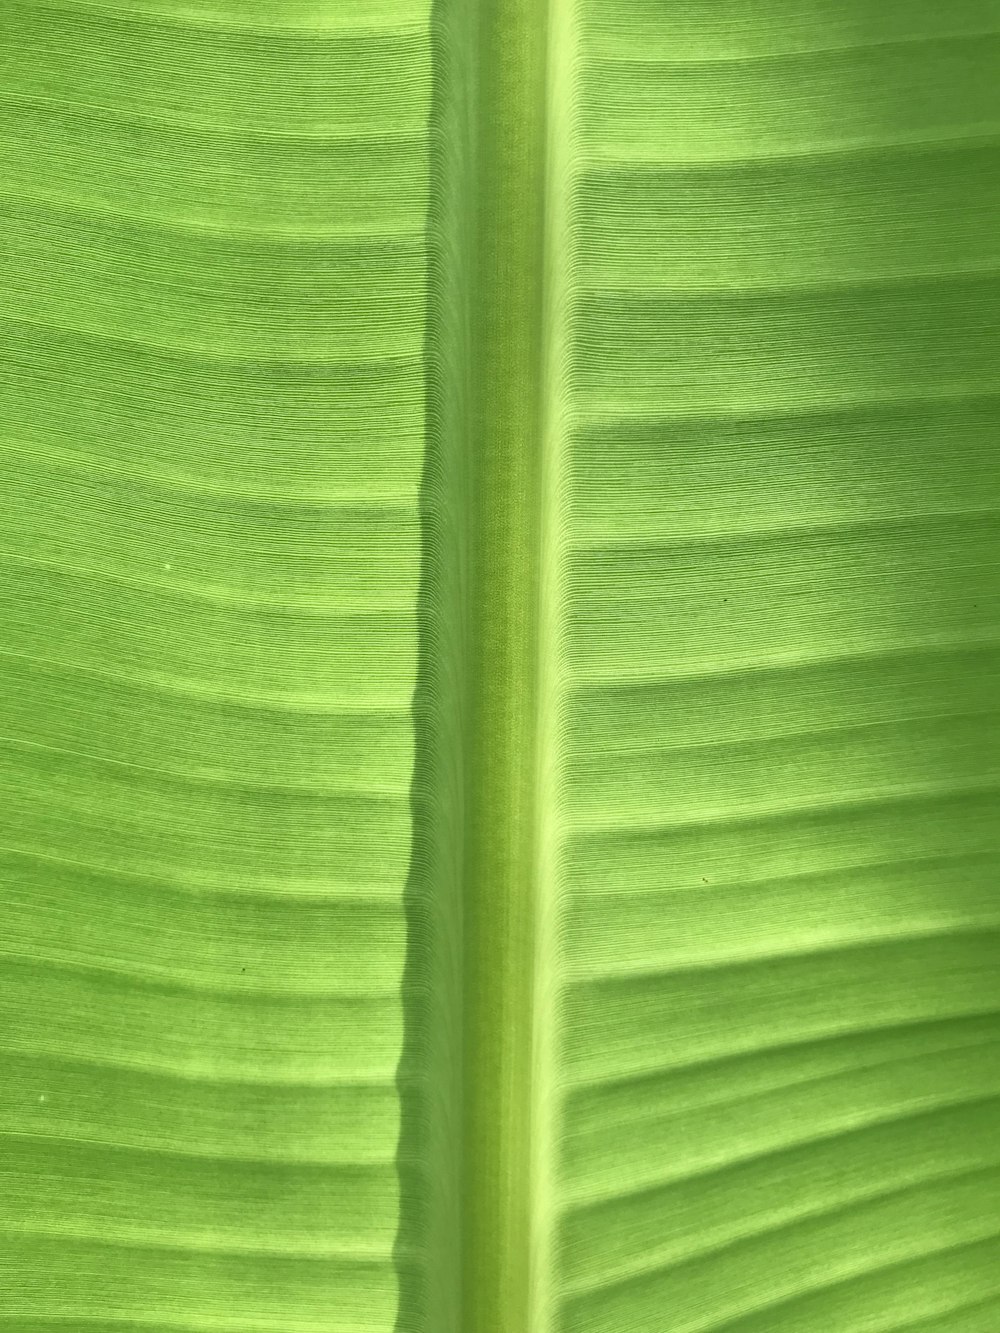 緑のバナナの葉のクローズアップ